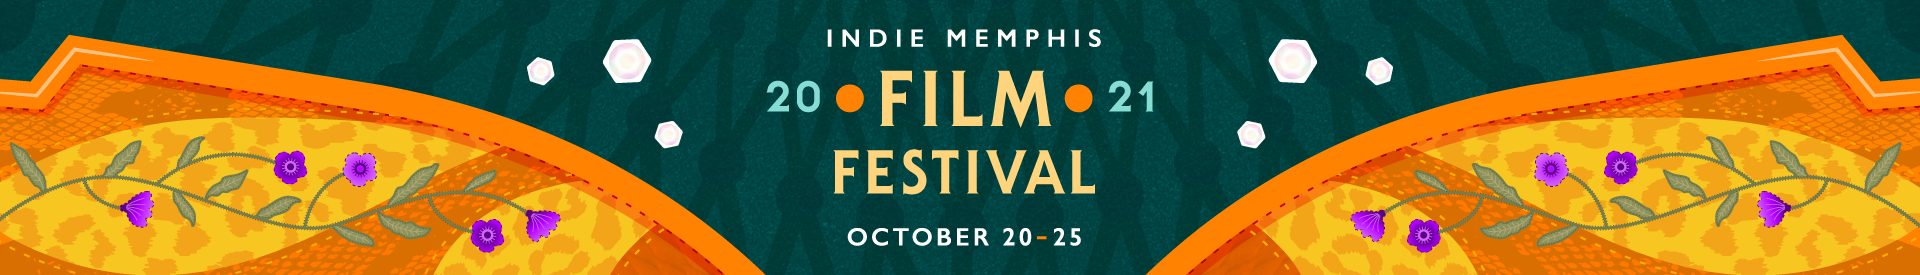 Indie Memphis Film Festival 2021 